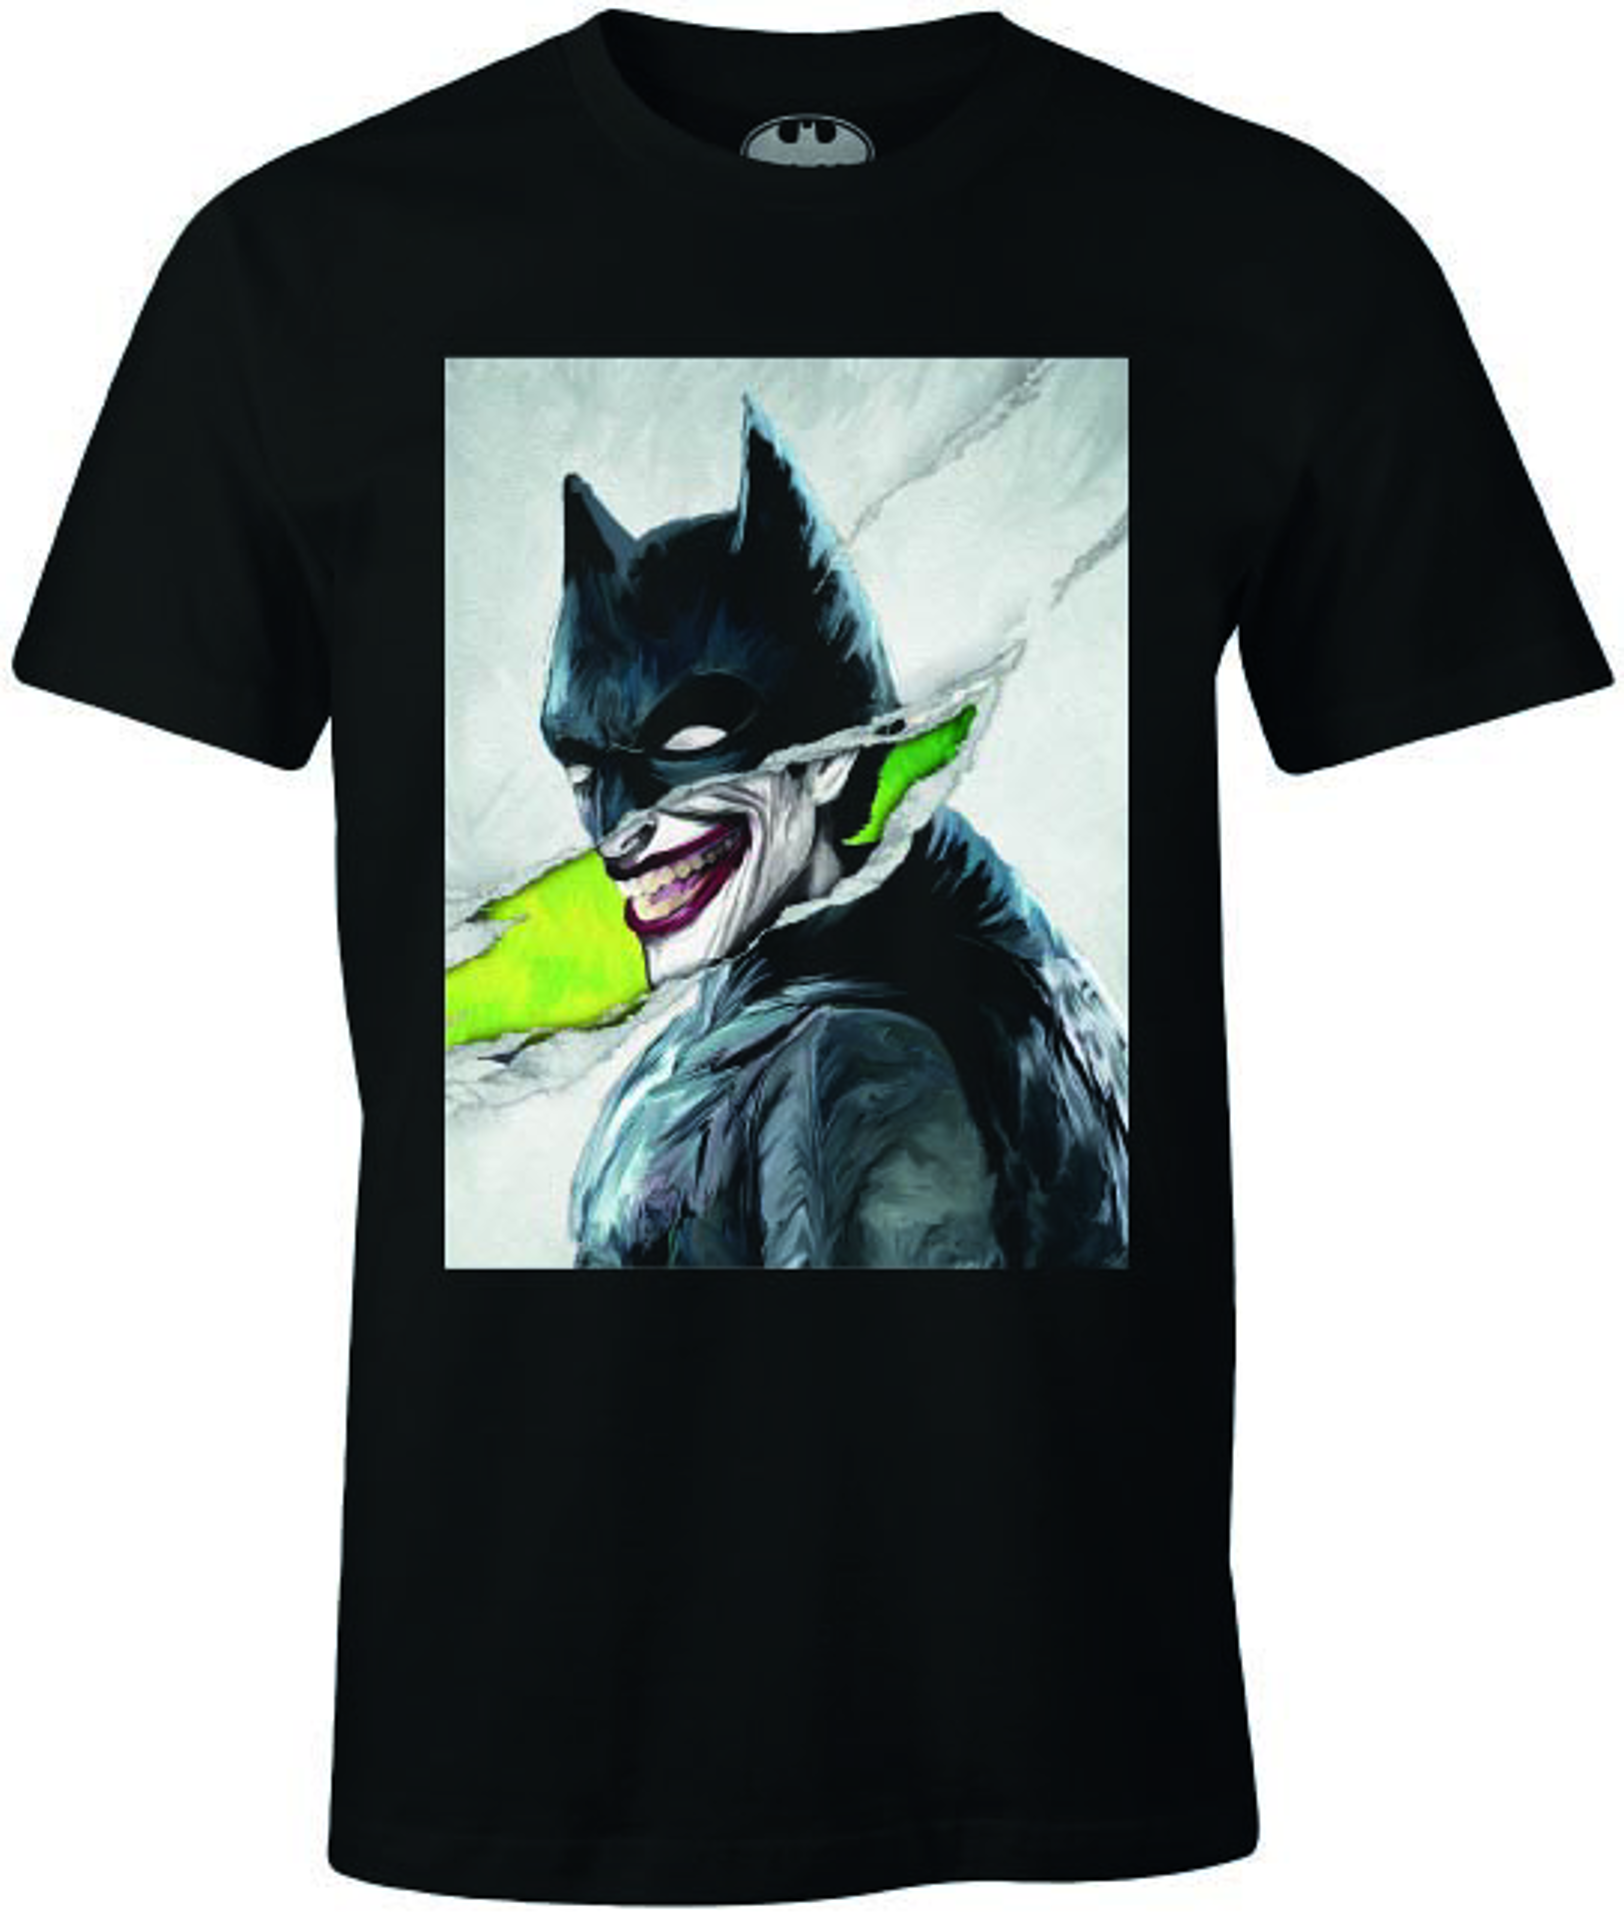 DC Comics - Batman - T-shirt Noir Hommes - Le Joker déguisé en Batman - S